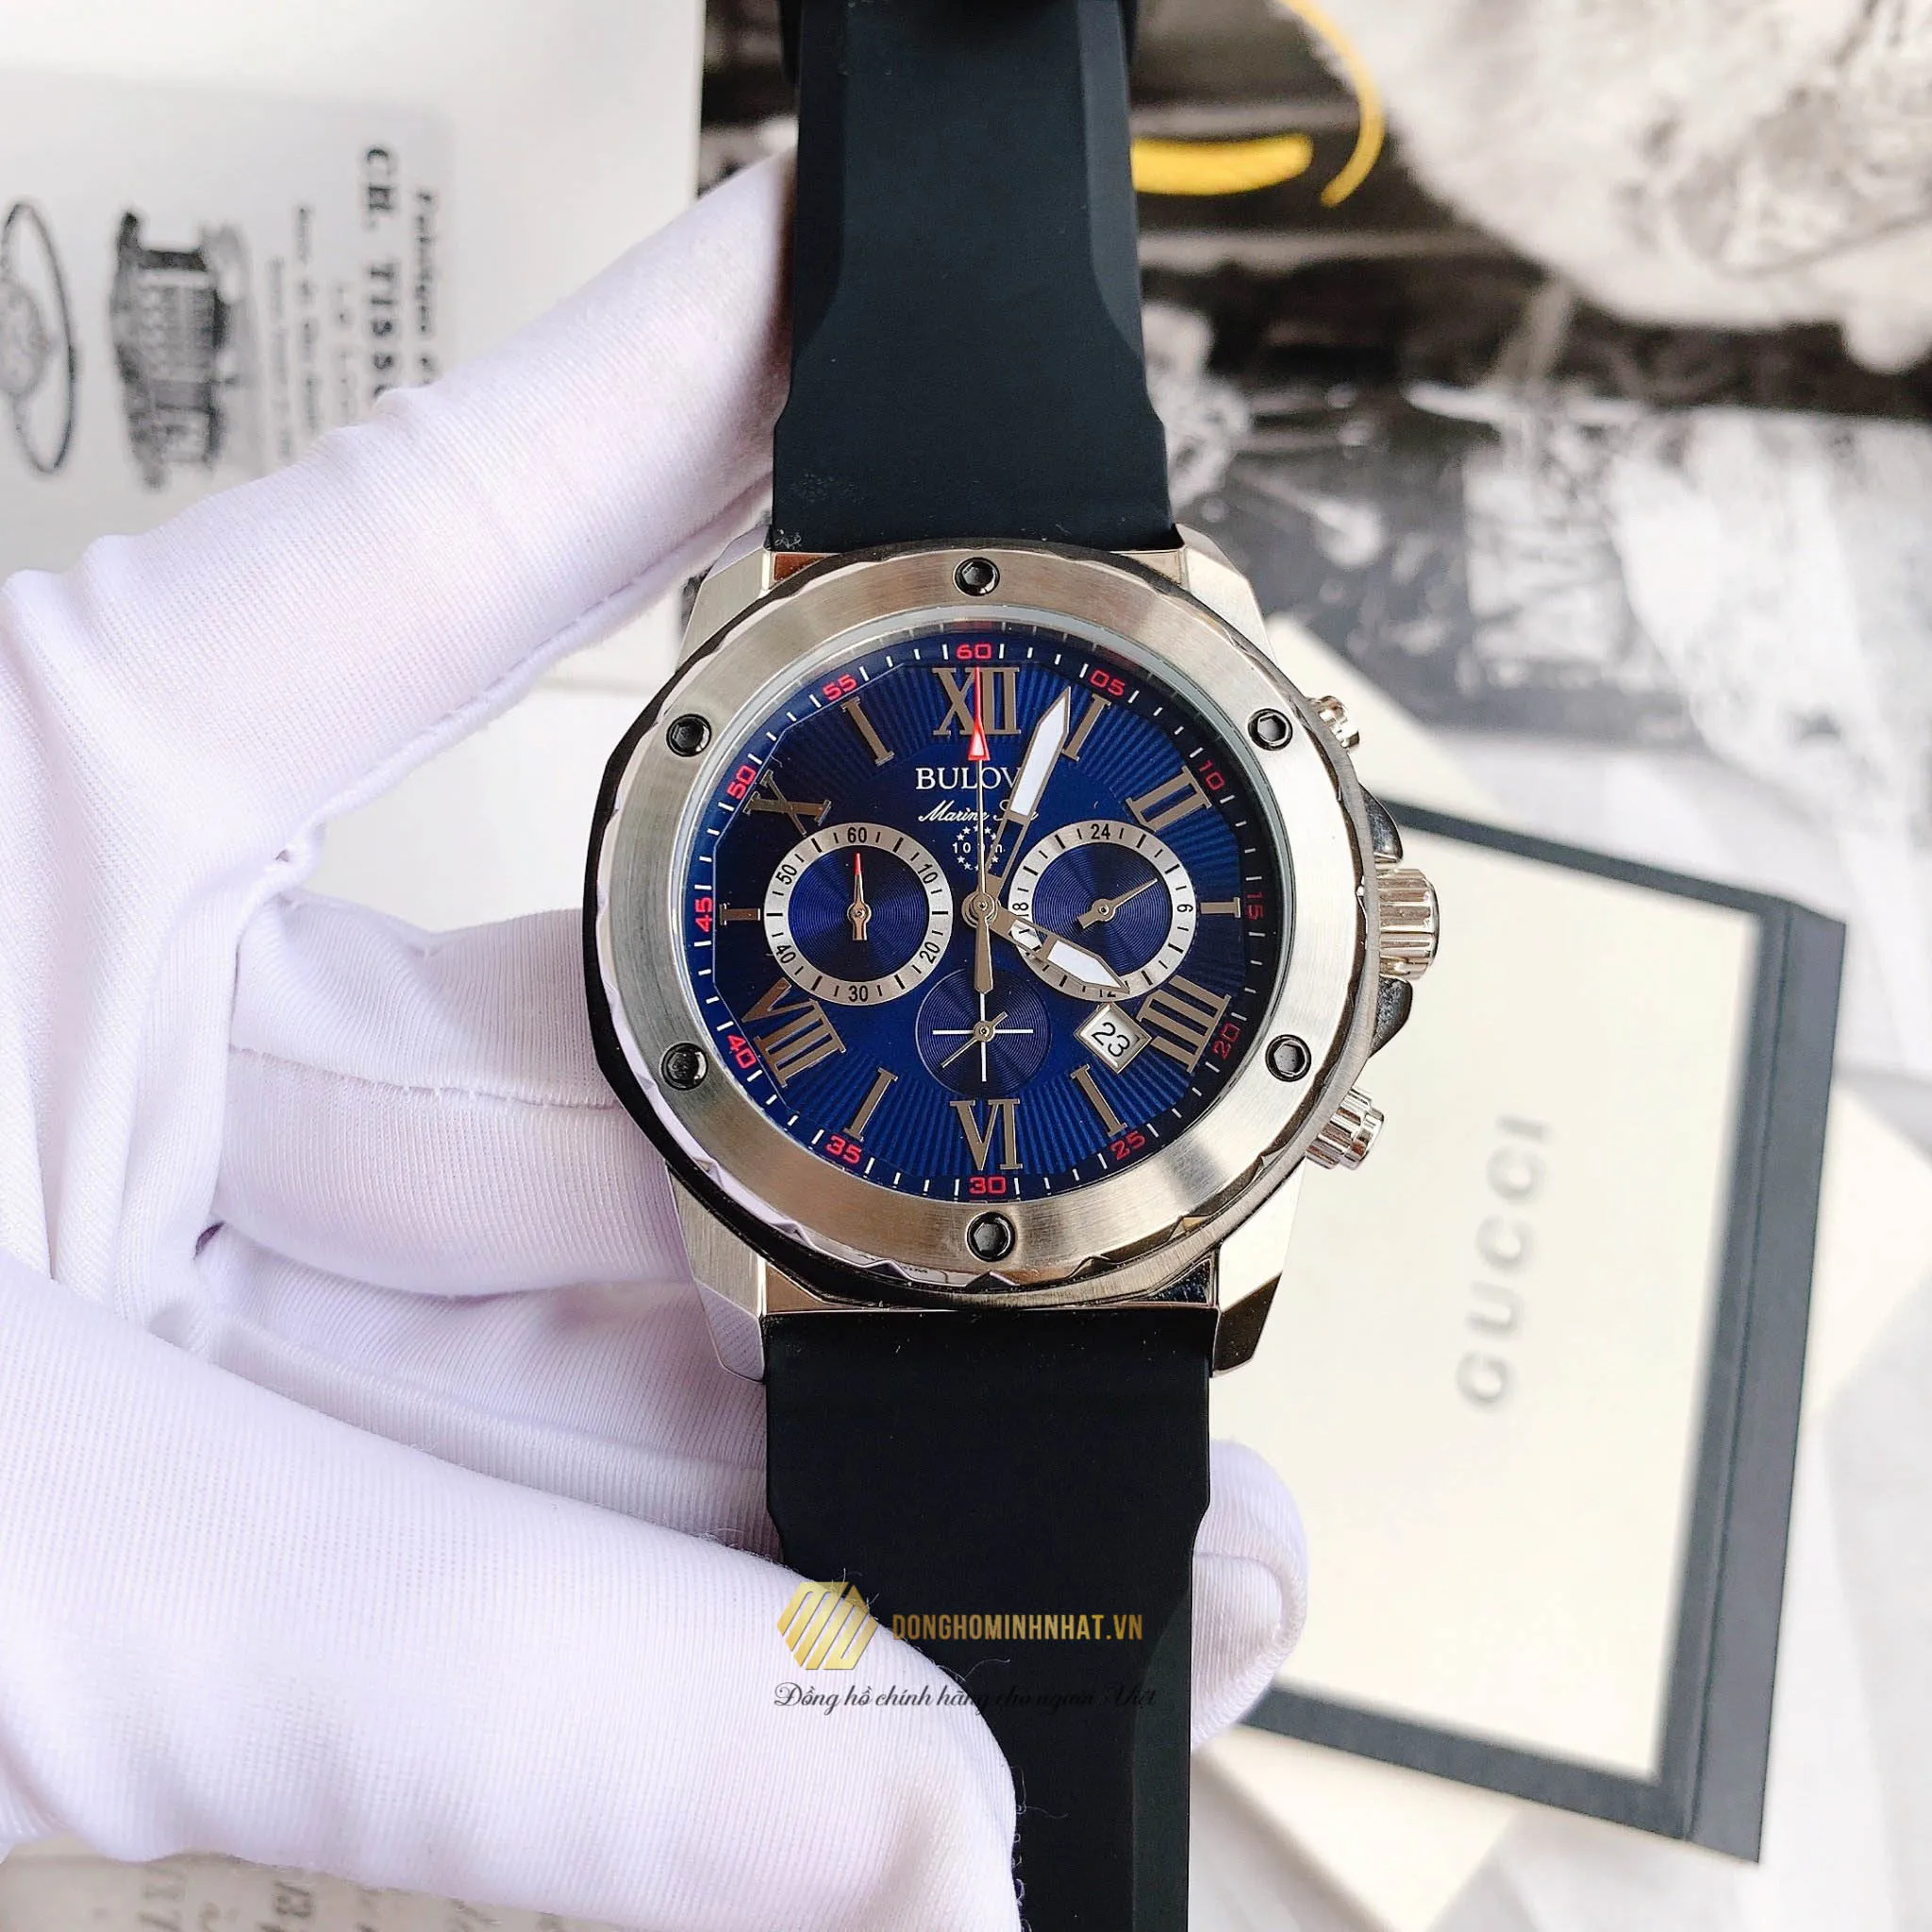 Đồng hồ đeo tay Chaxigo Y128 mặt kính tròn - Đồng hồ nam dây cao su cao cấp  ManYi giá sỉ, giá bán buôn - Thị Trường Sỉ